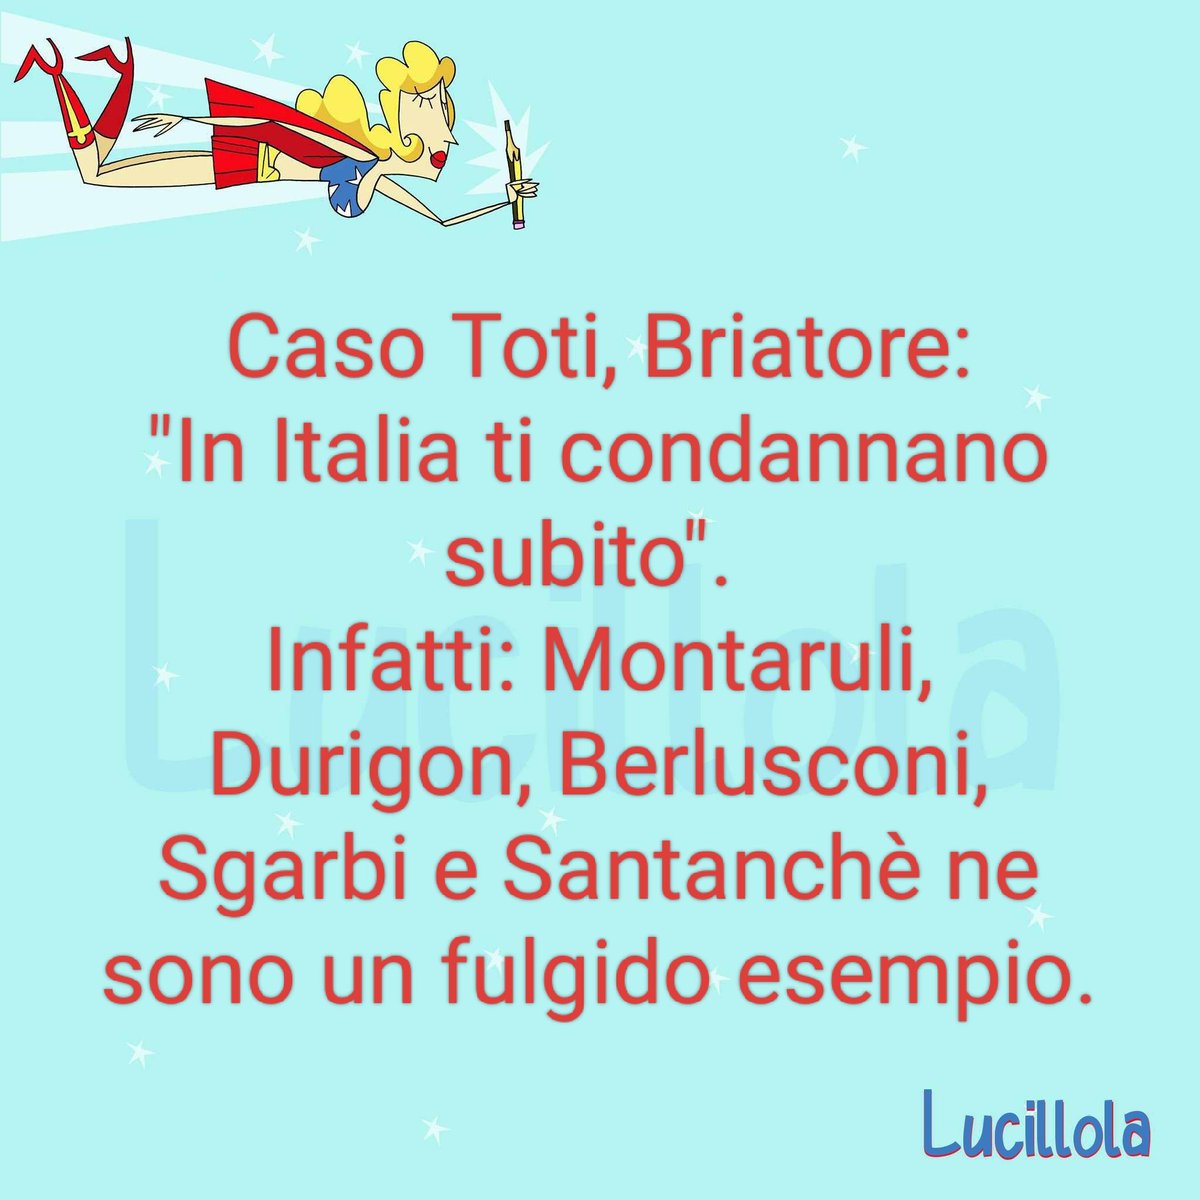 #Toti #Briatore #Liguria #Santanche #sgarbi #corruzione #8maggio #Esselunga